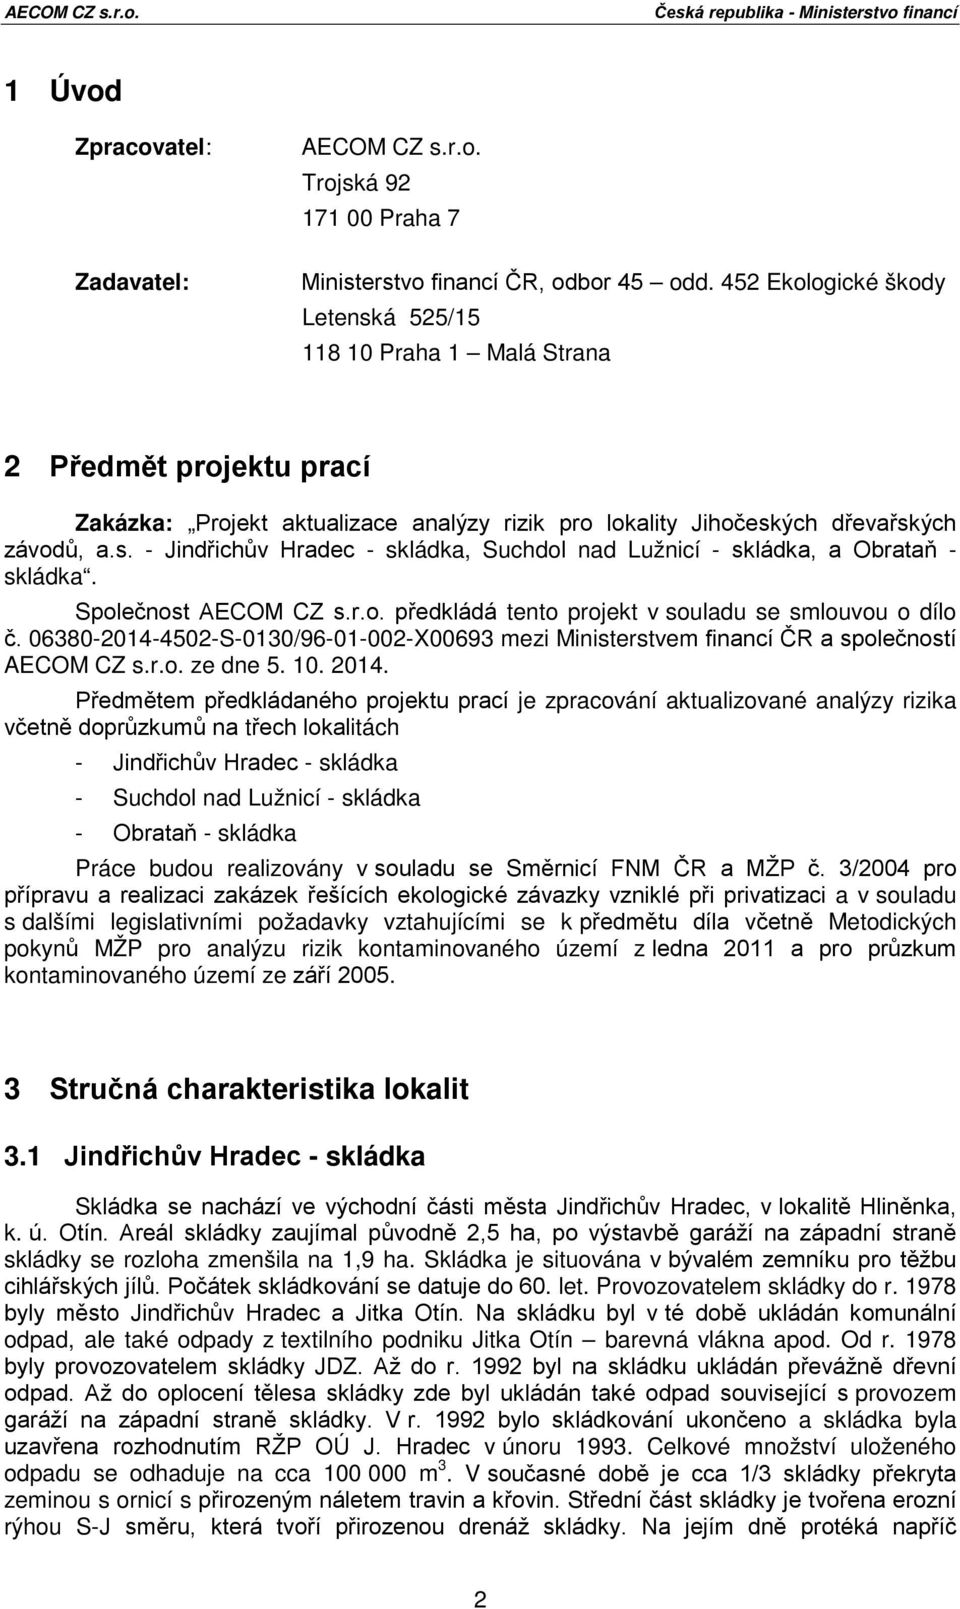 Společnost AECOM CZ s.r.o. předkládá tento projekt v souladu se smlouvou o dílo č. 06380-2014-4502-S-0130/96-01-002-X00693 mezi Ministerstvem financí ČR a společností AECOM CZ s.r.o. ze dne 5. 10.